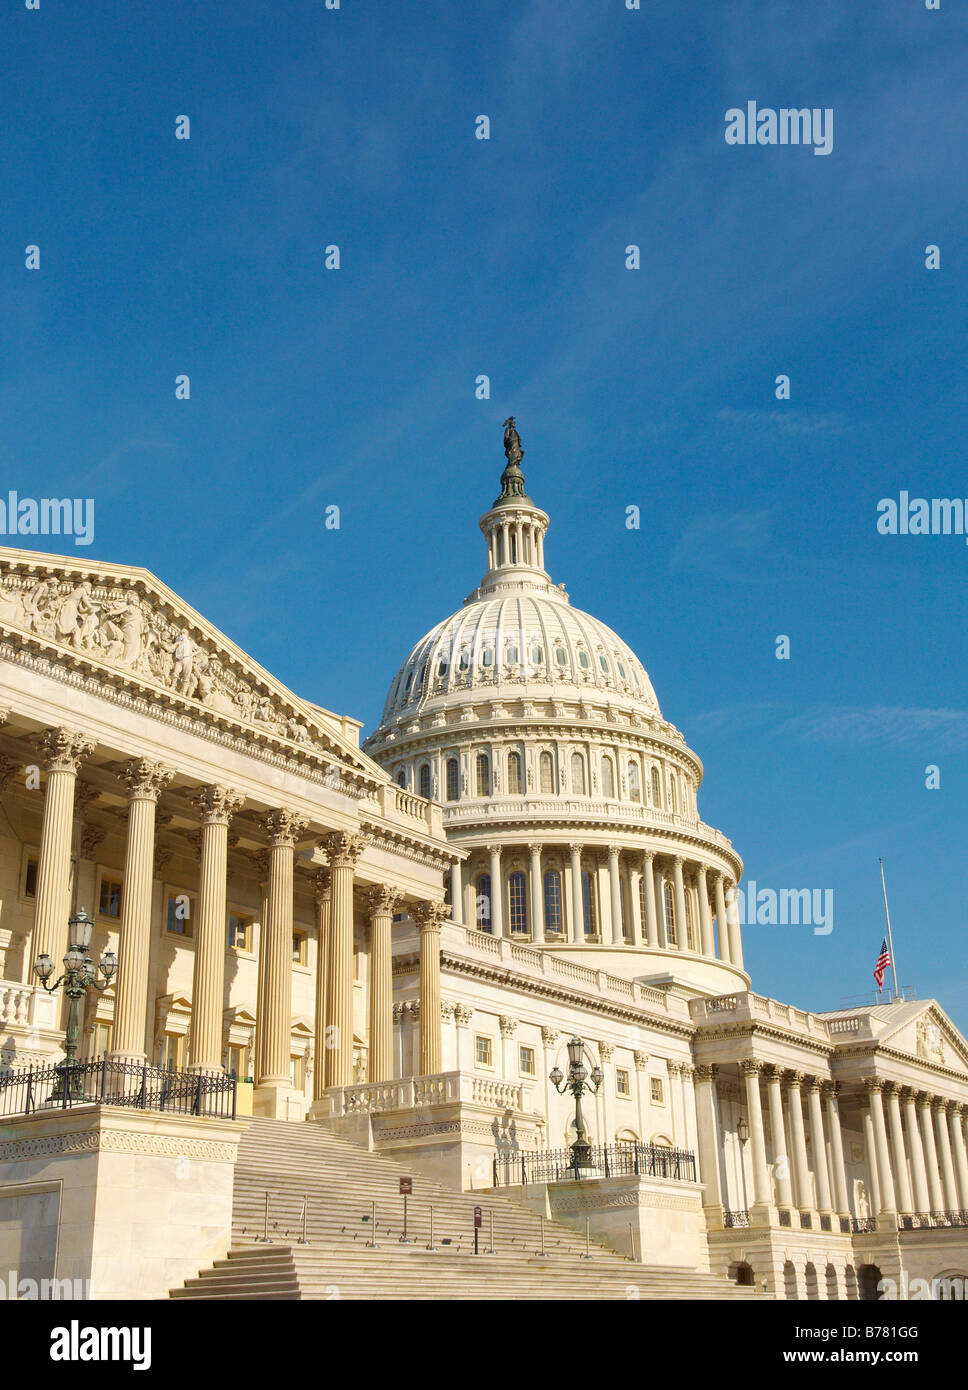 El edificio del Capitolio de los Estados Unidos, Washington, D.C. Foto de stock